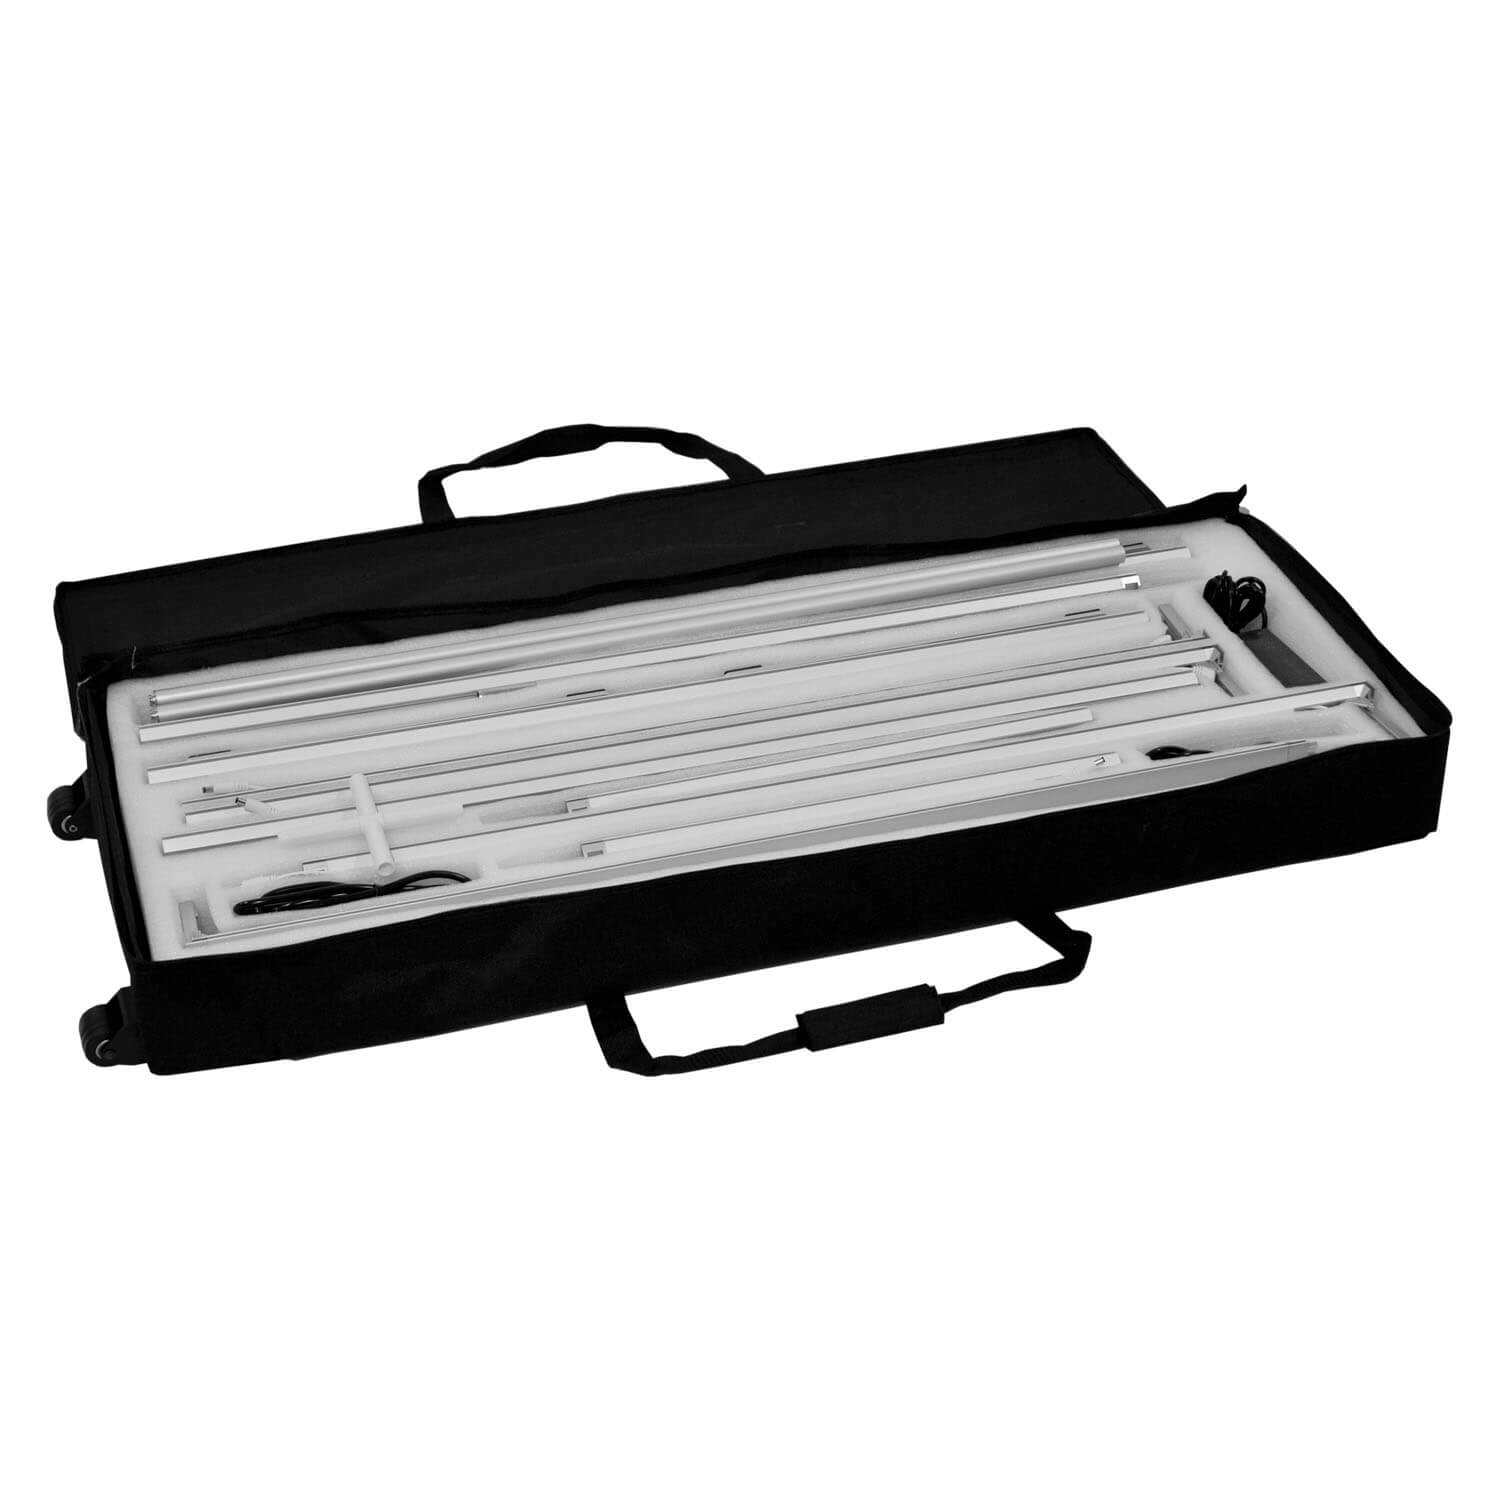 Transporttasche mit Rollen und Schaumstoffinlay für die mobile LED Messewand aus Aluminium